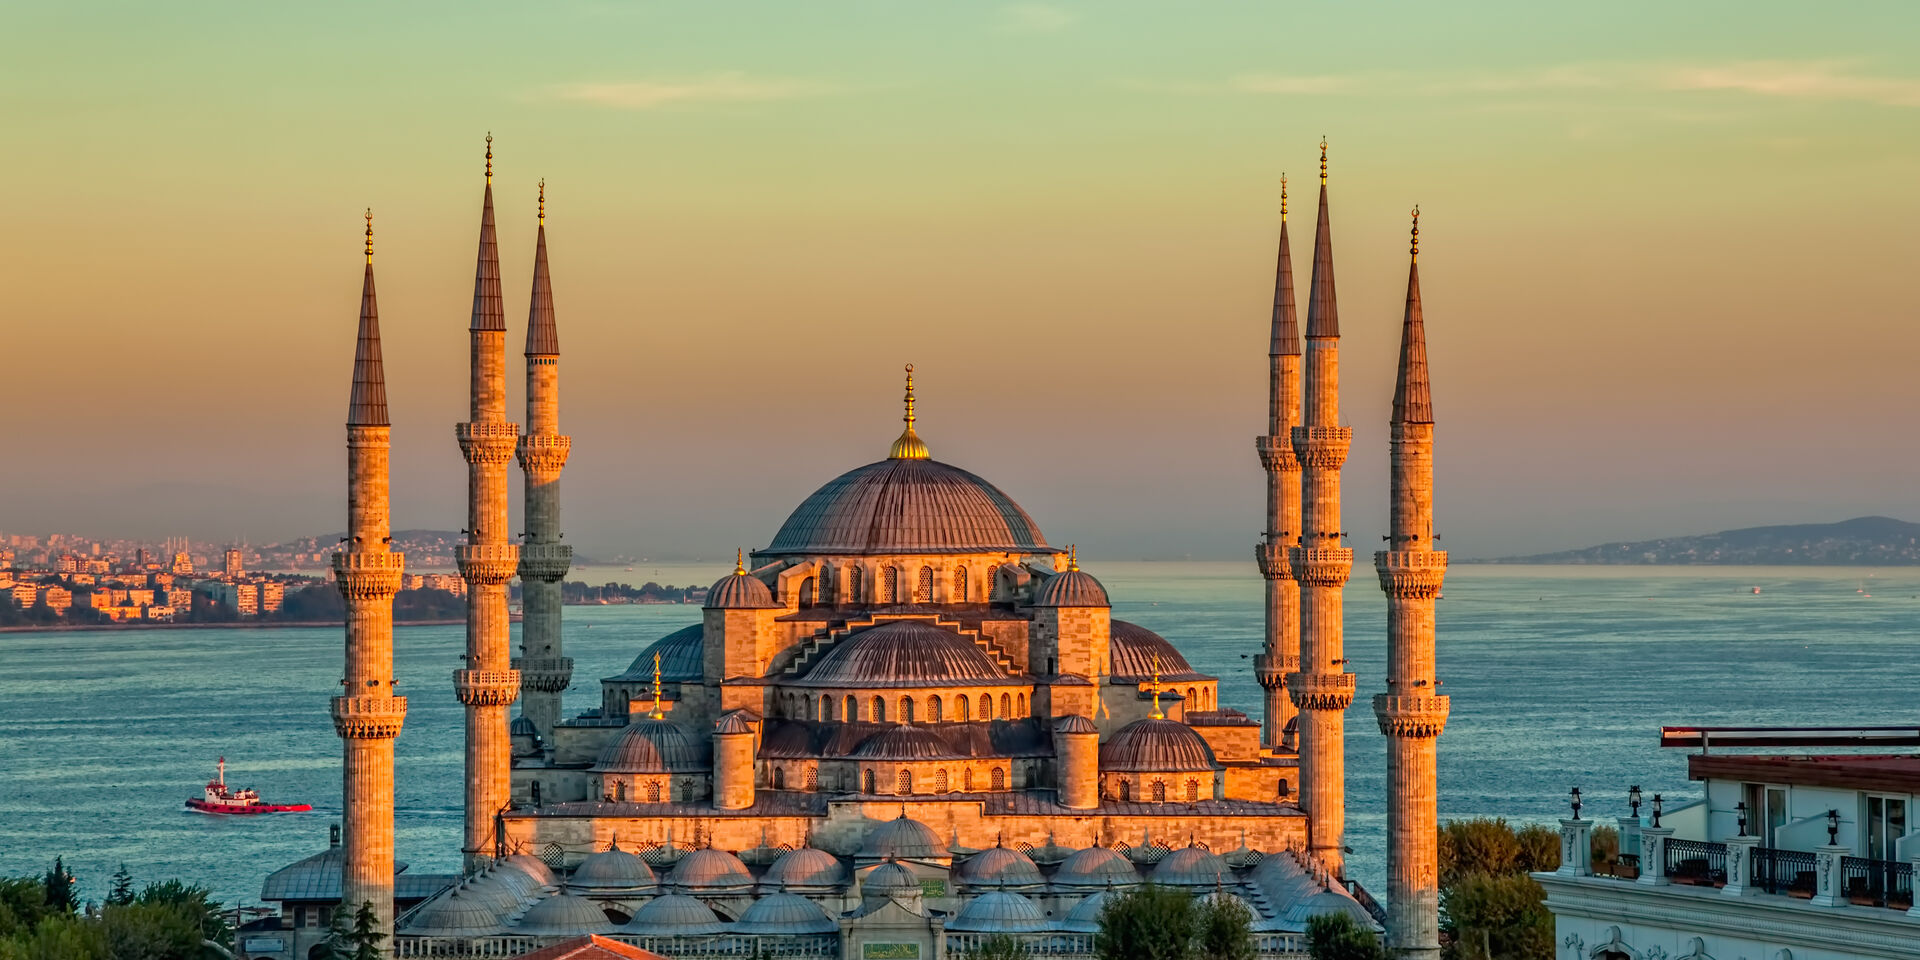 Địa điểm du xuân Thổ Nhĩ Kỳ đầu tiên được nhắc tới trong danh sách là Istanbul.